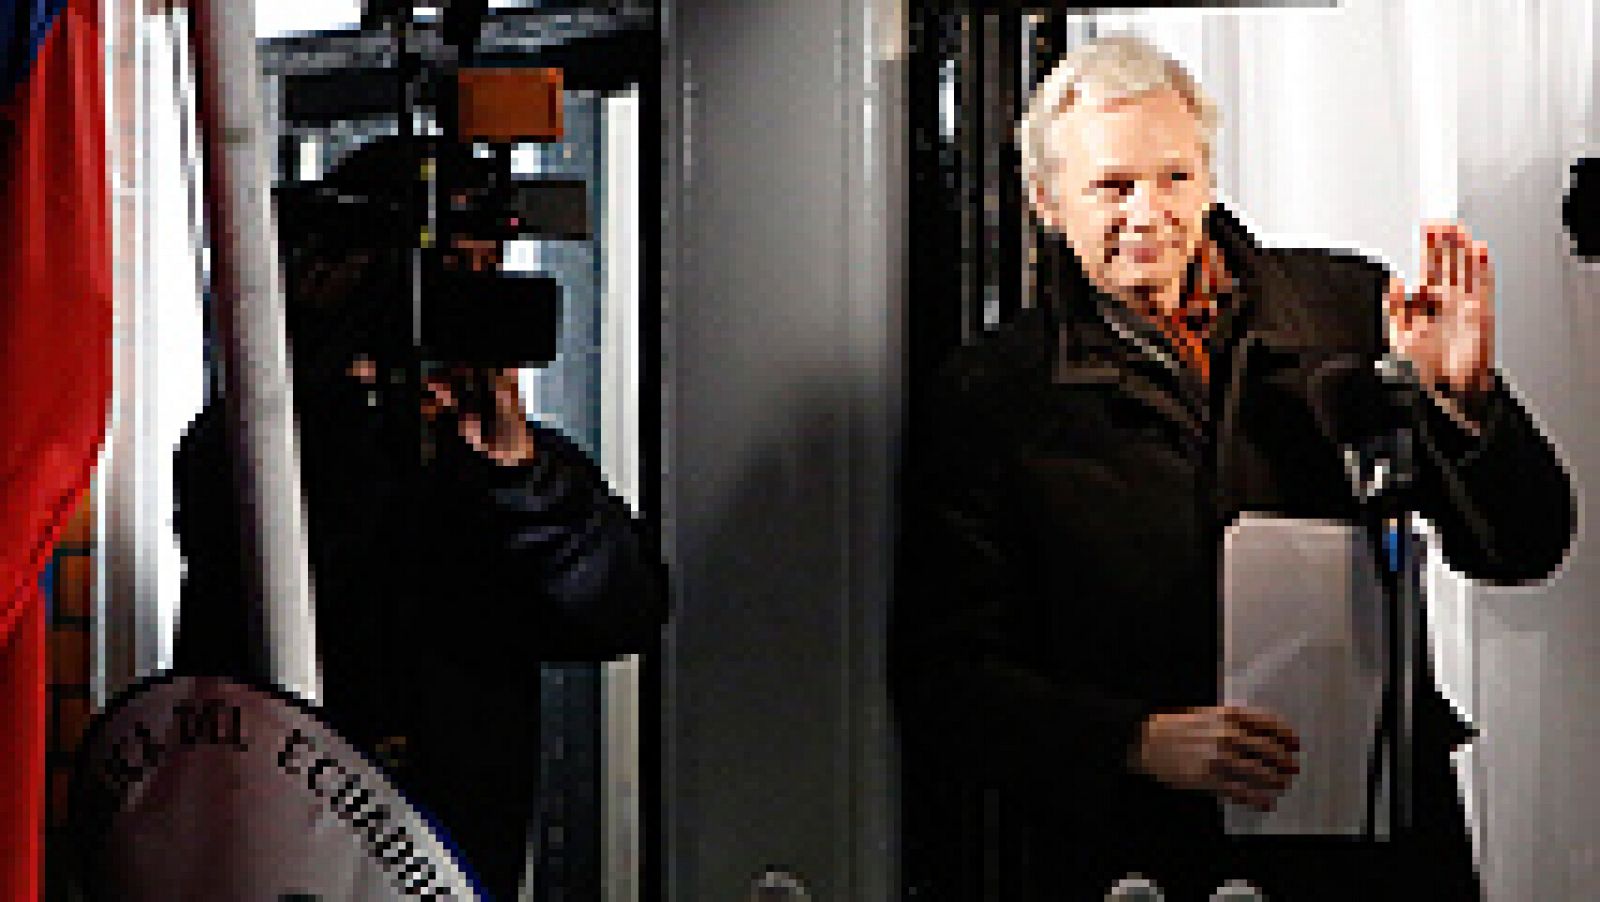 La Justicia sueca está dispuesta a interrogar al fundador de Wikileaks, Julian Assange, en la embajada de Ecuador en Londres, donde se encuentra refugiado, para evitar así que prescriban algunos de los delitos de los que le acusa. La Fiscal General sueca, Marianne Ny, ha enviado este viernes una solicitud a los abogados de Assange, según ha informado la propia Ny en un comunicado.